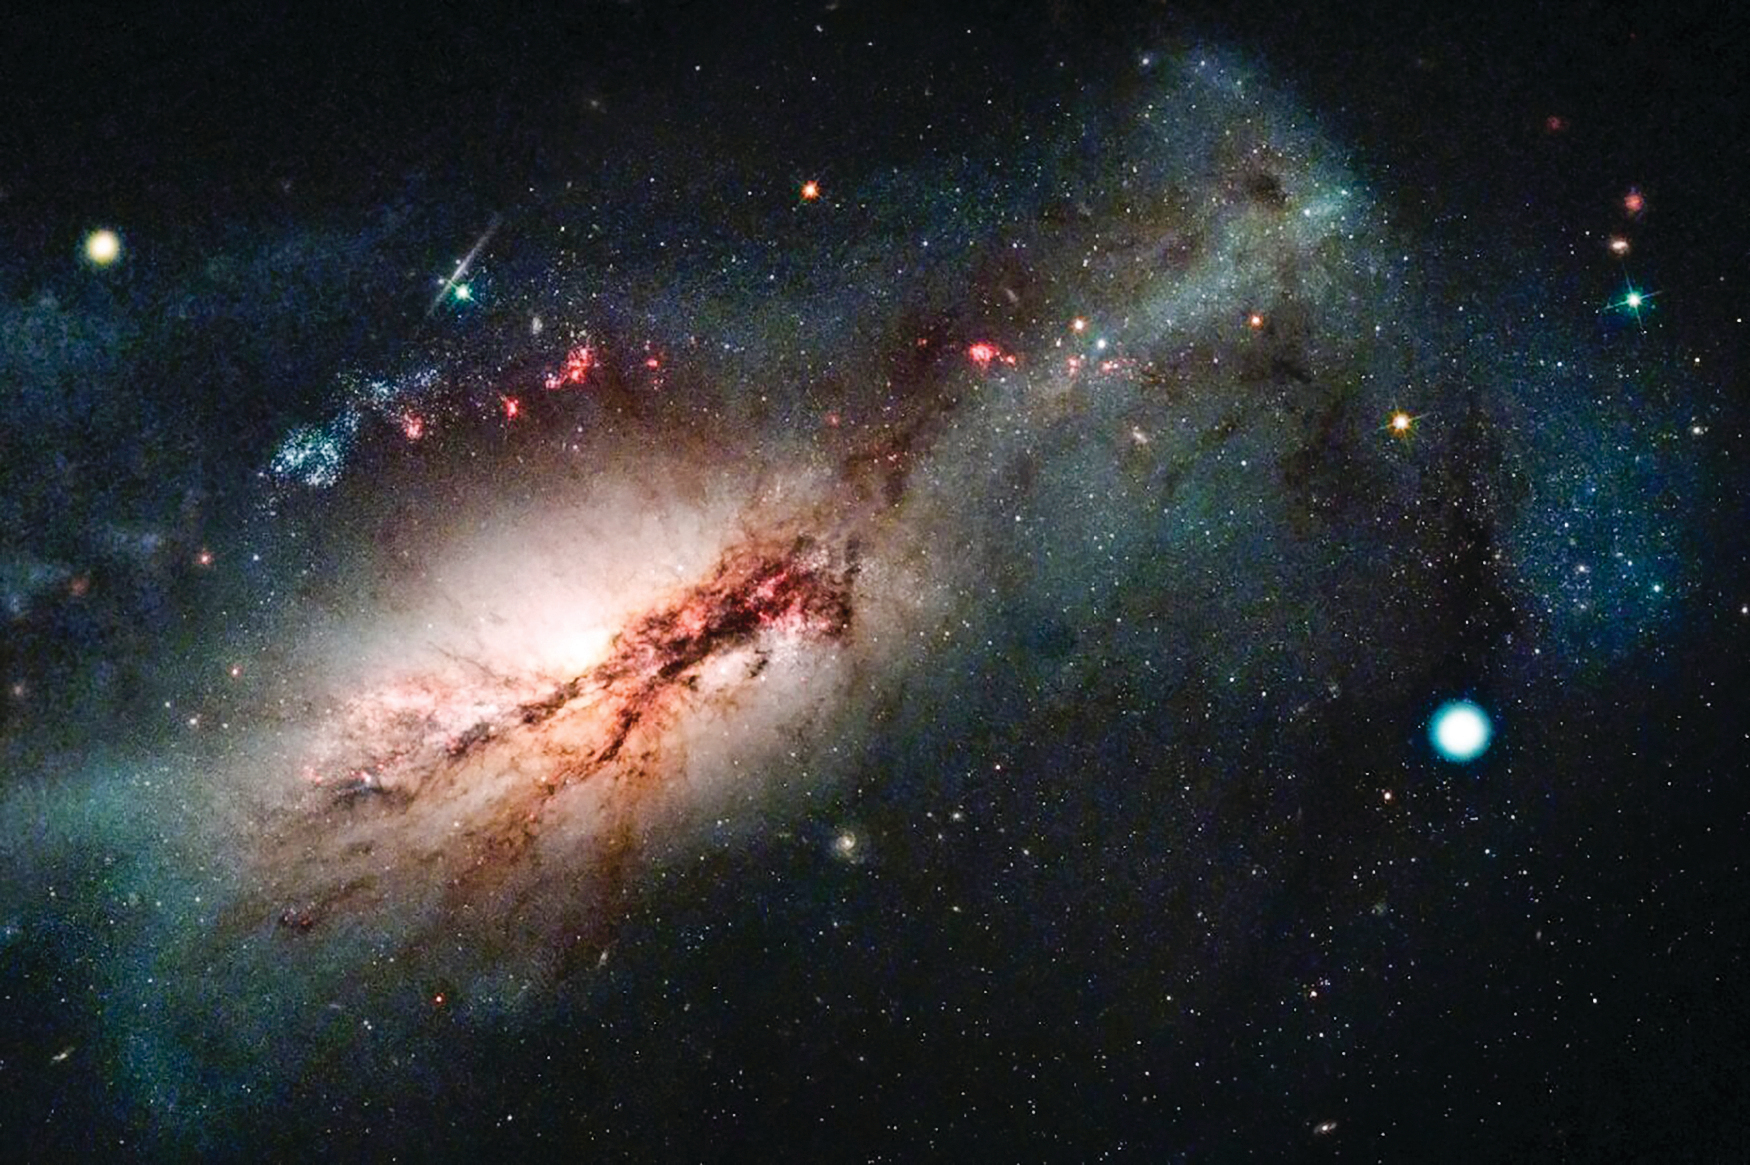 電子俘獲（electron capture）超新星 2018zd（圖中右側的白點）以及它所在的 NGC 2146 星系（圖中左側的星系）。（ NASA/STSCI/J. Depasquale; Las Cumbres Observatory）